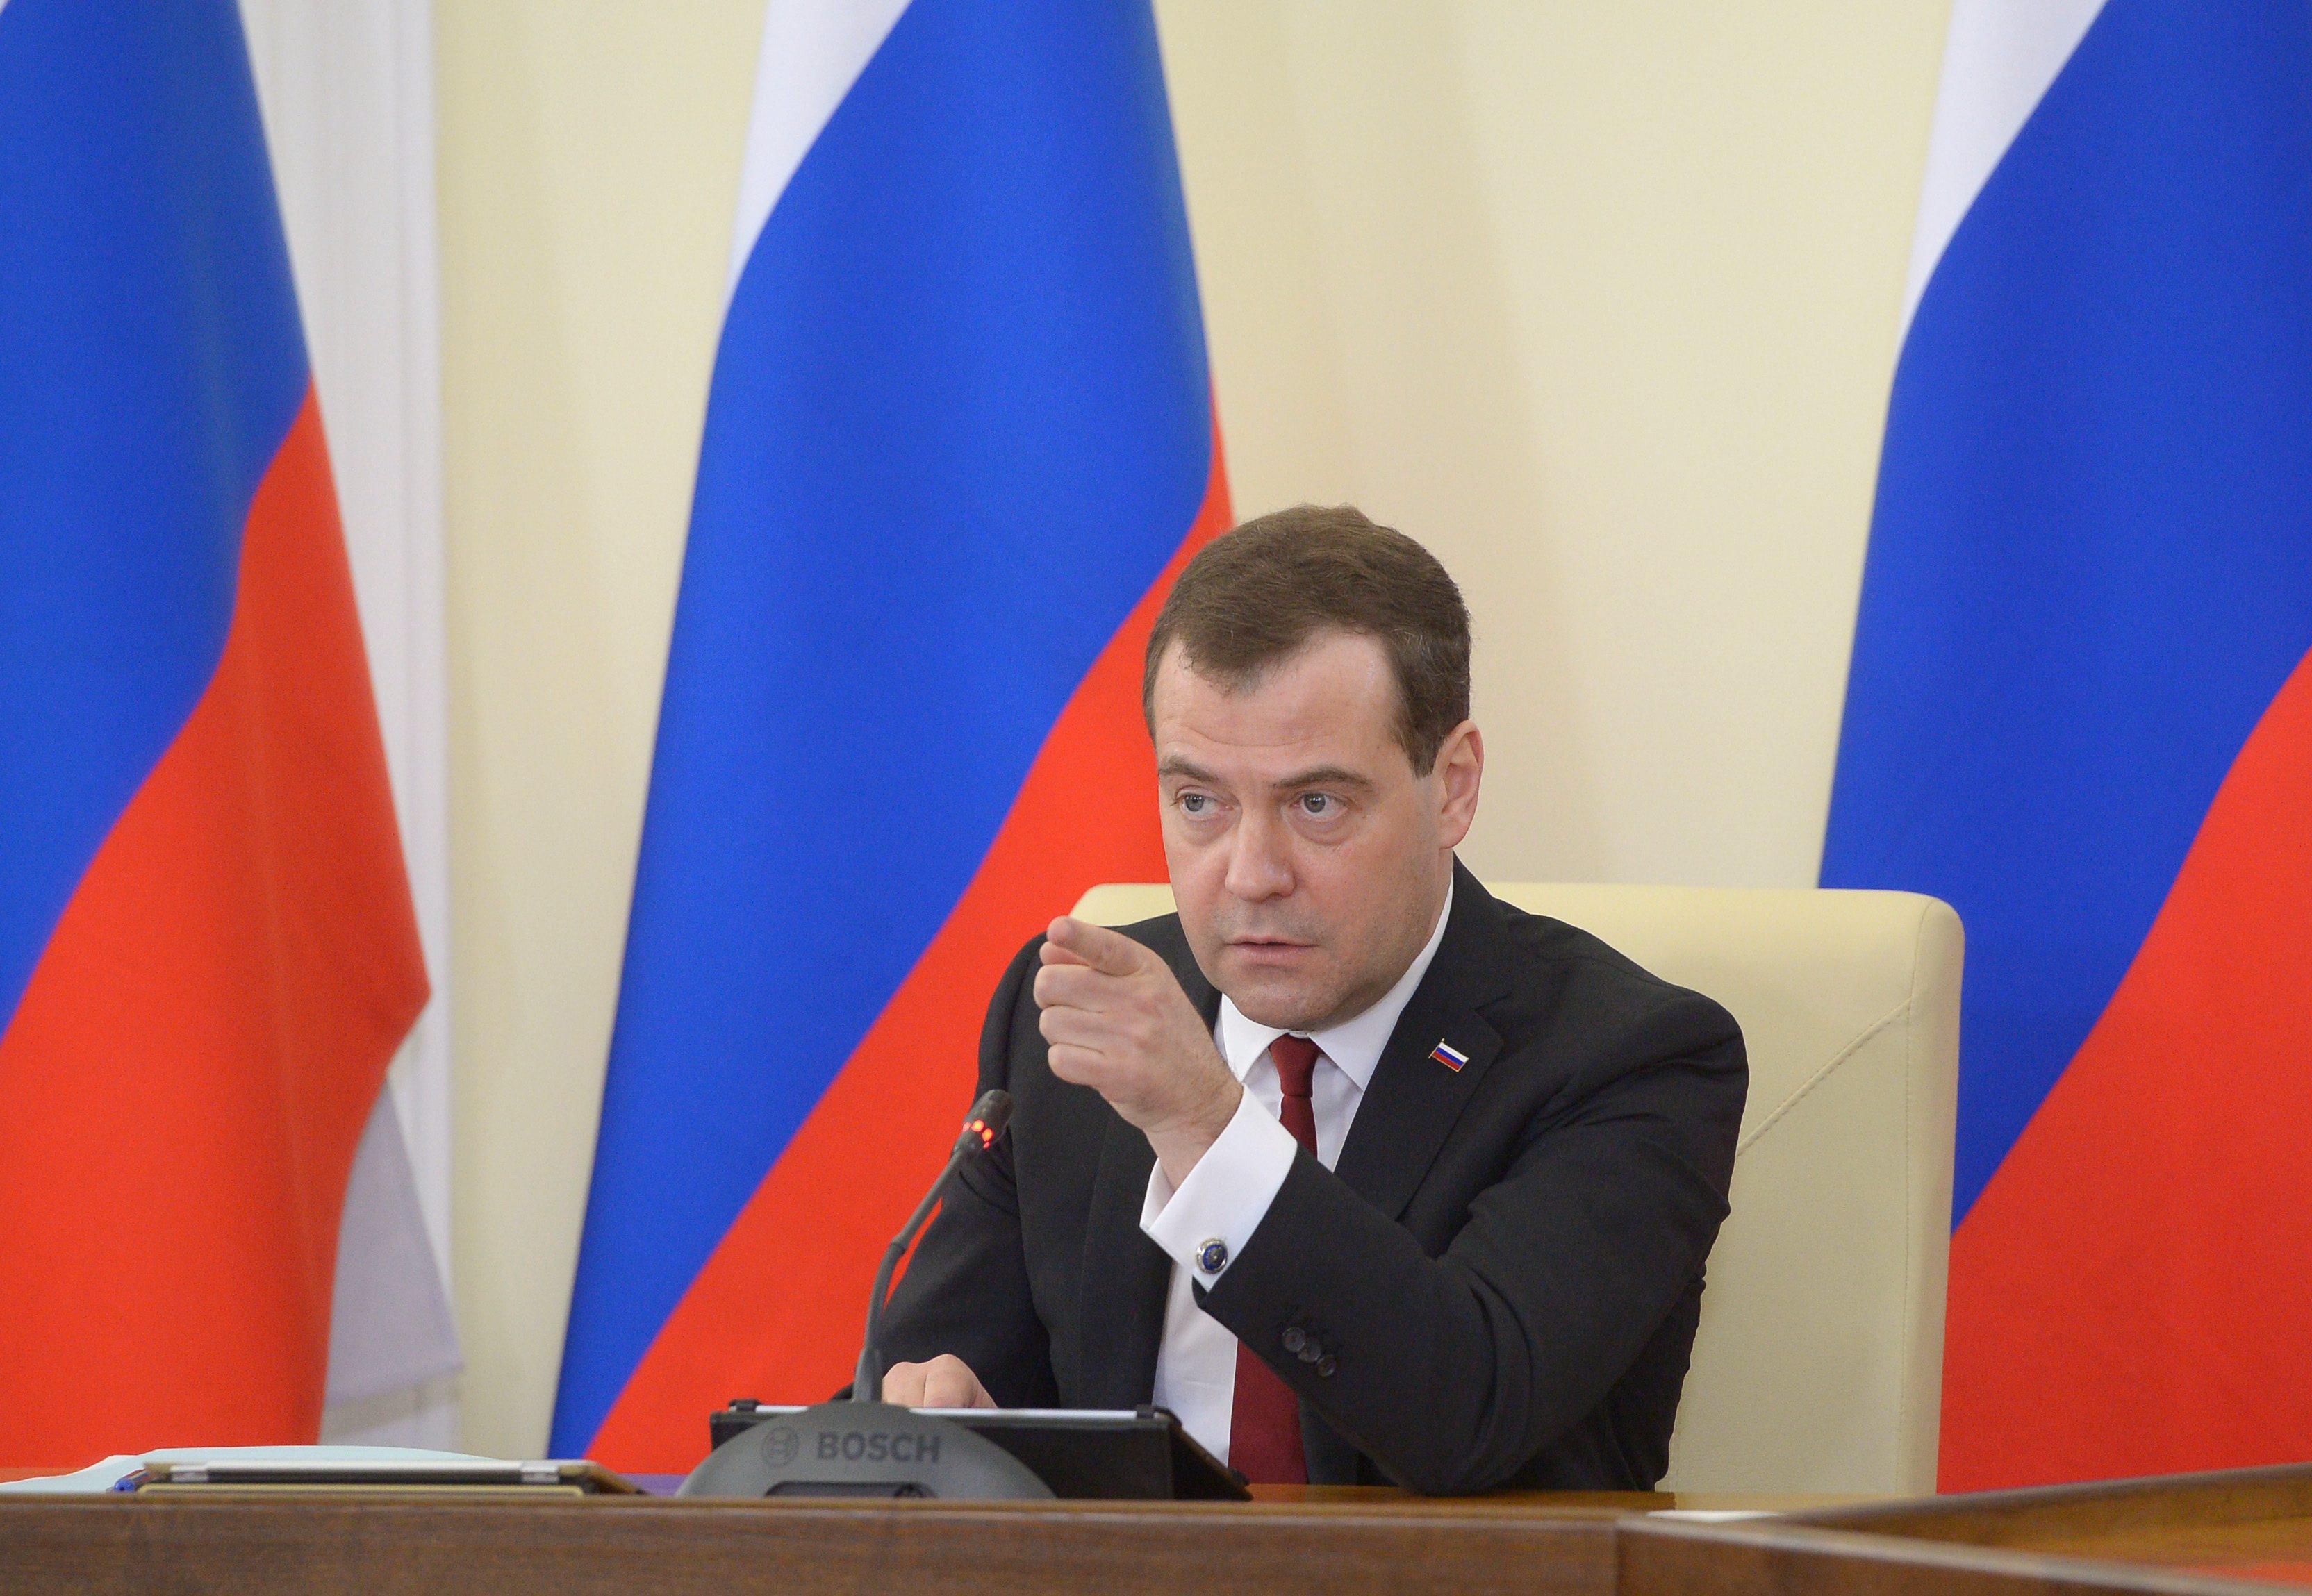 Дмитрий Медведев е най-високопоставеният държавен служител, който прави посещение на полуострова след присъединяването му